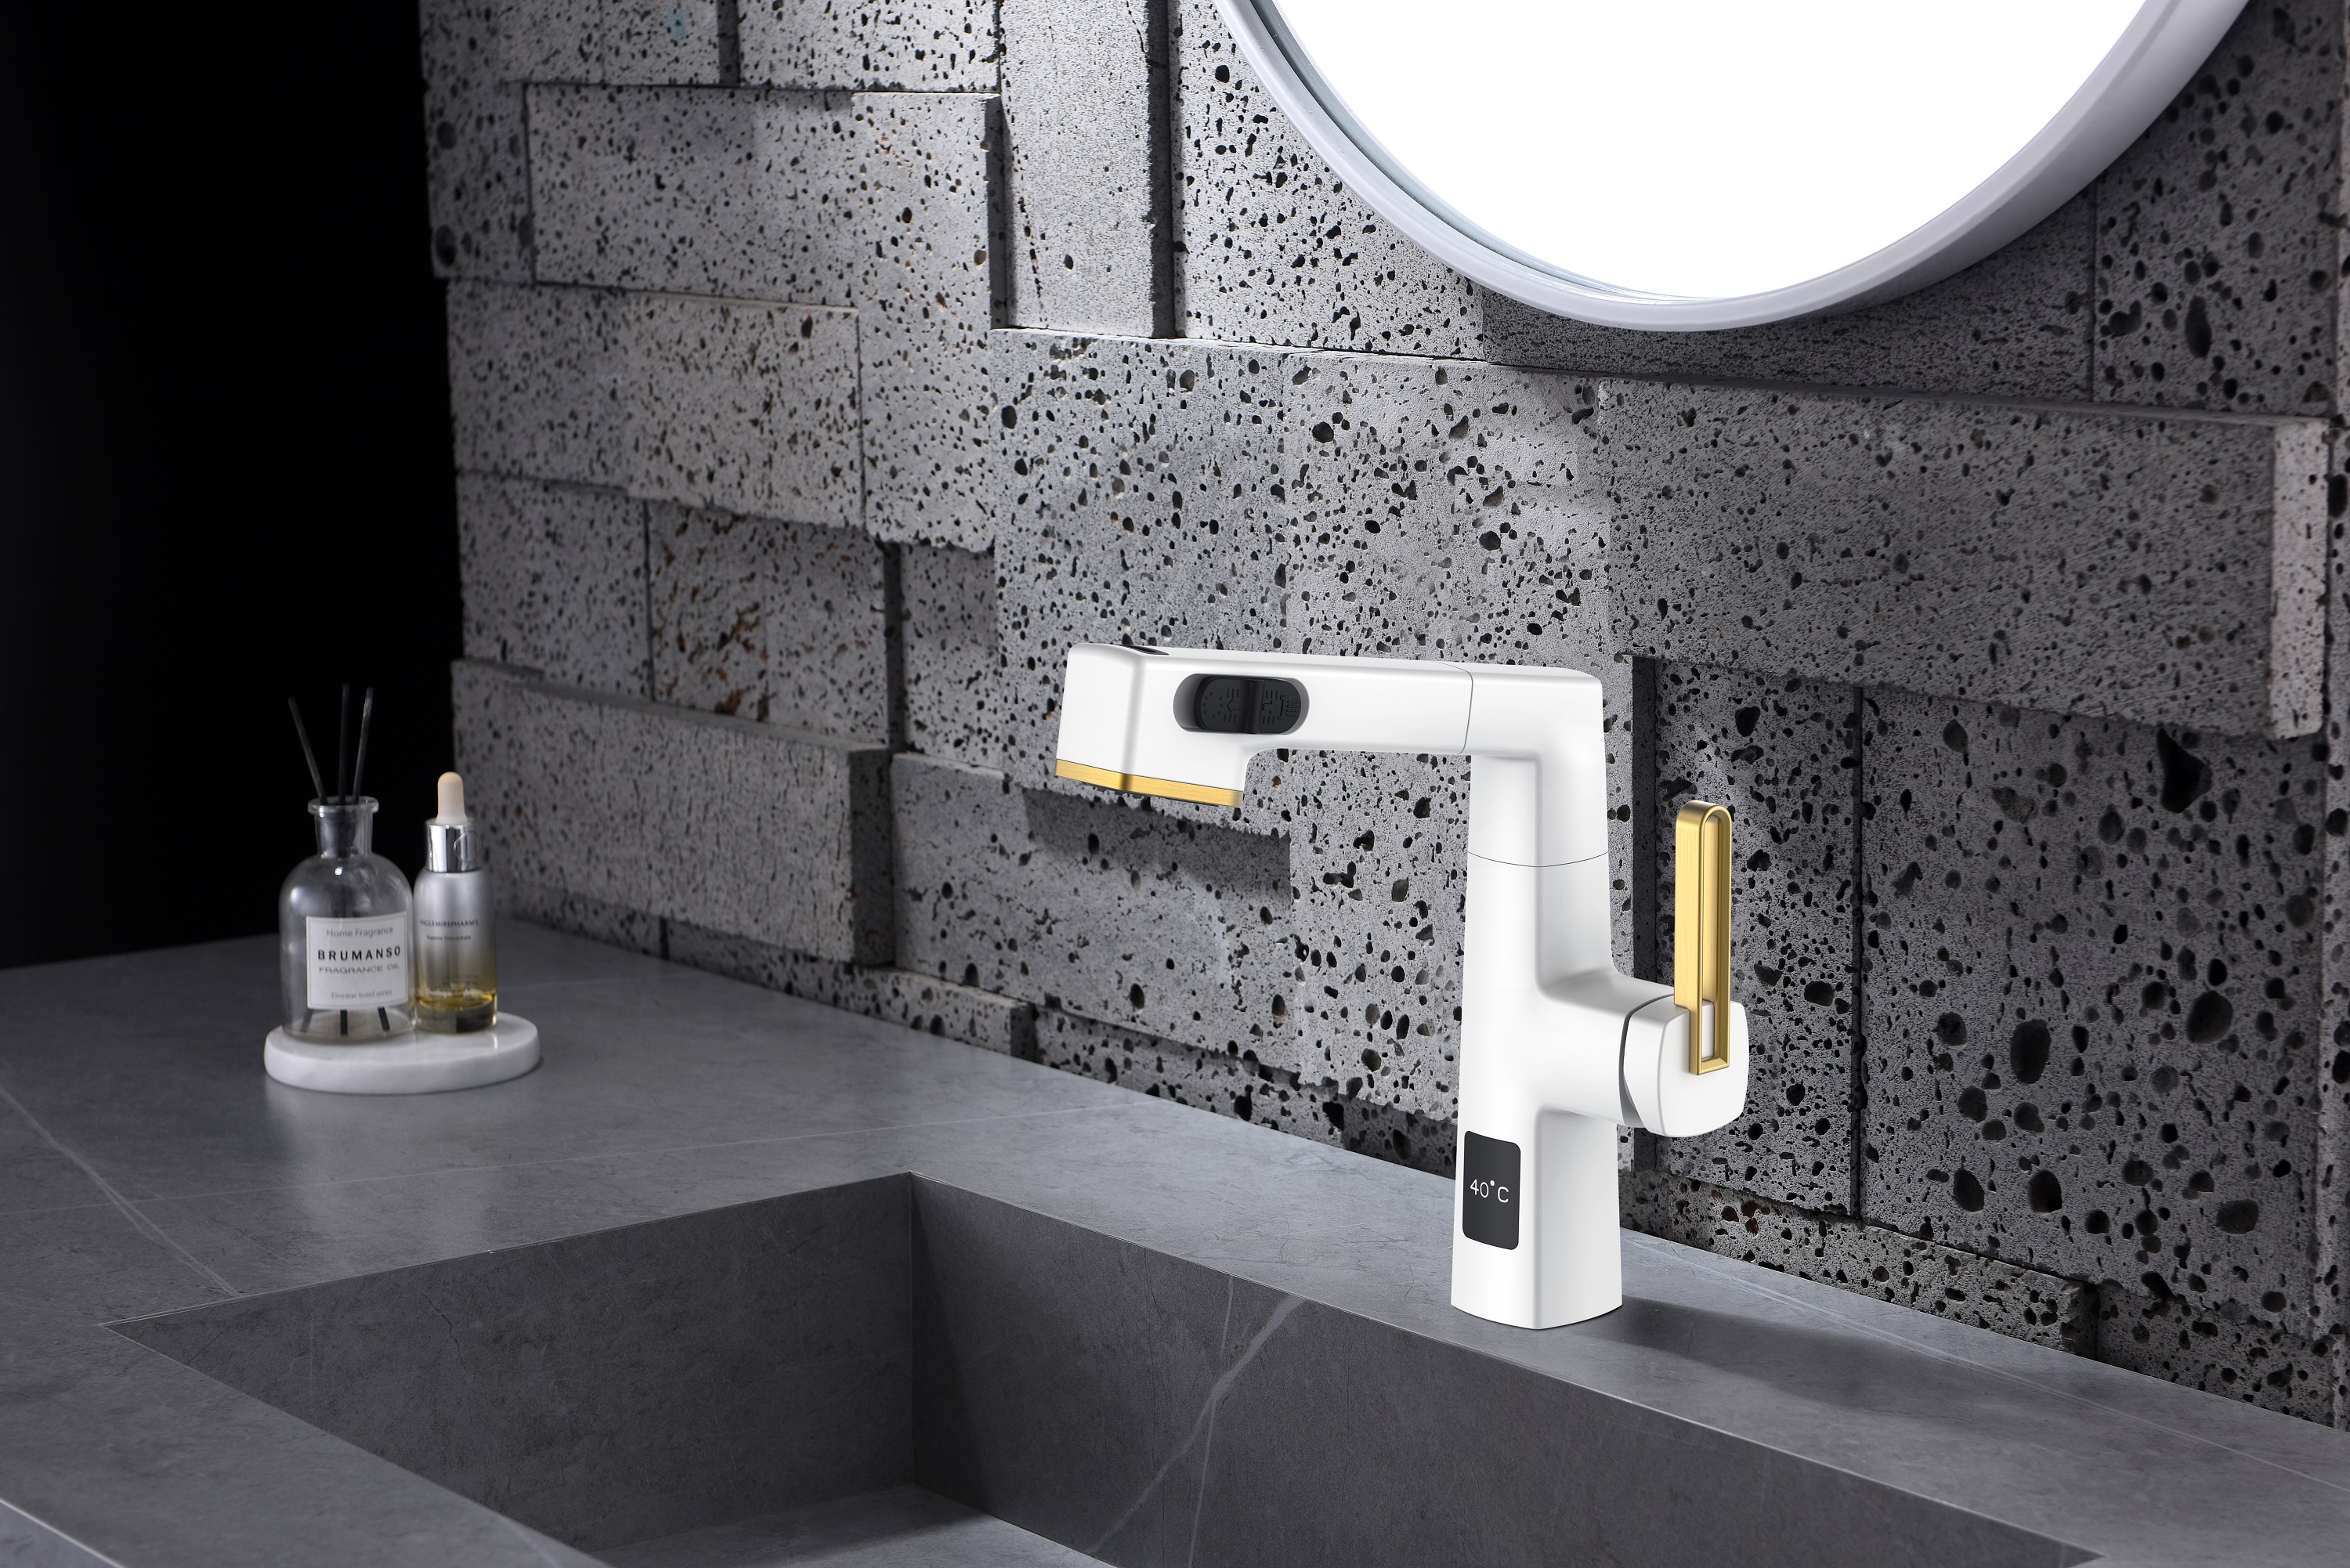  Hauteur réglable de robinet de salle de bains de conception unique d'affichage de la température blanc et d'or rose